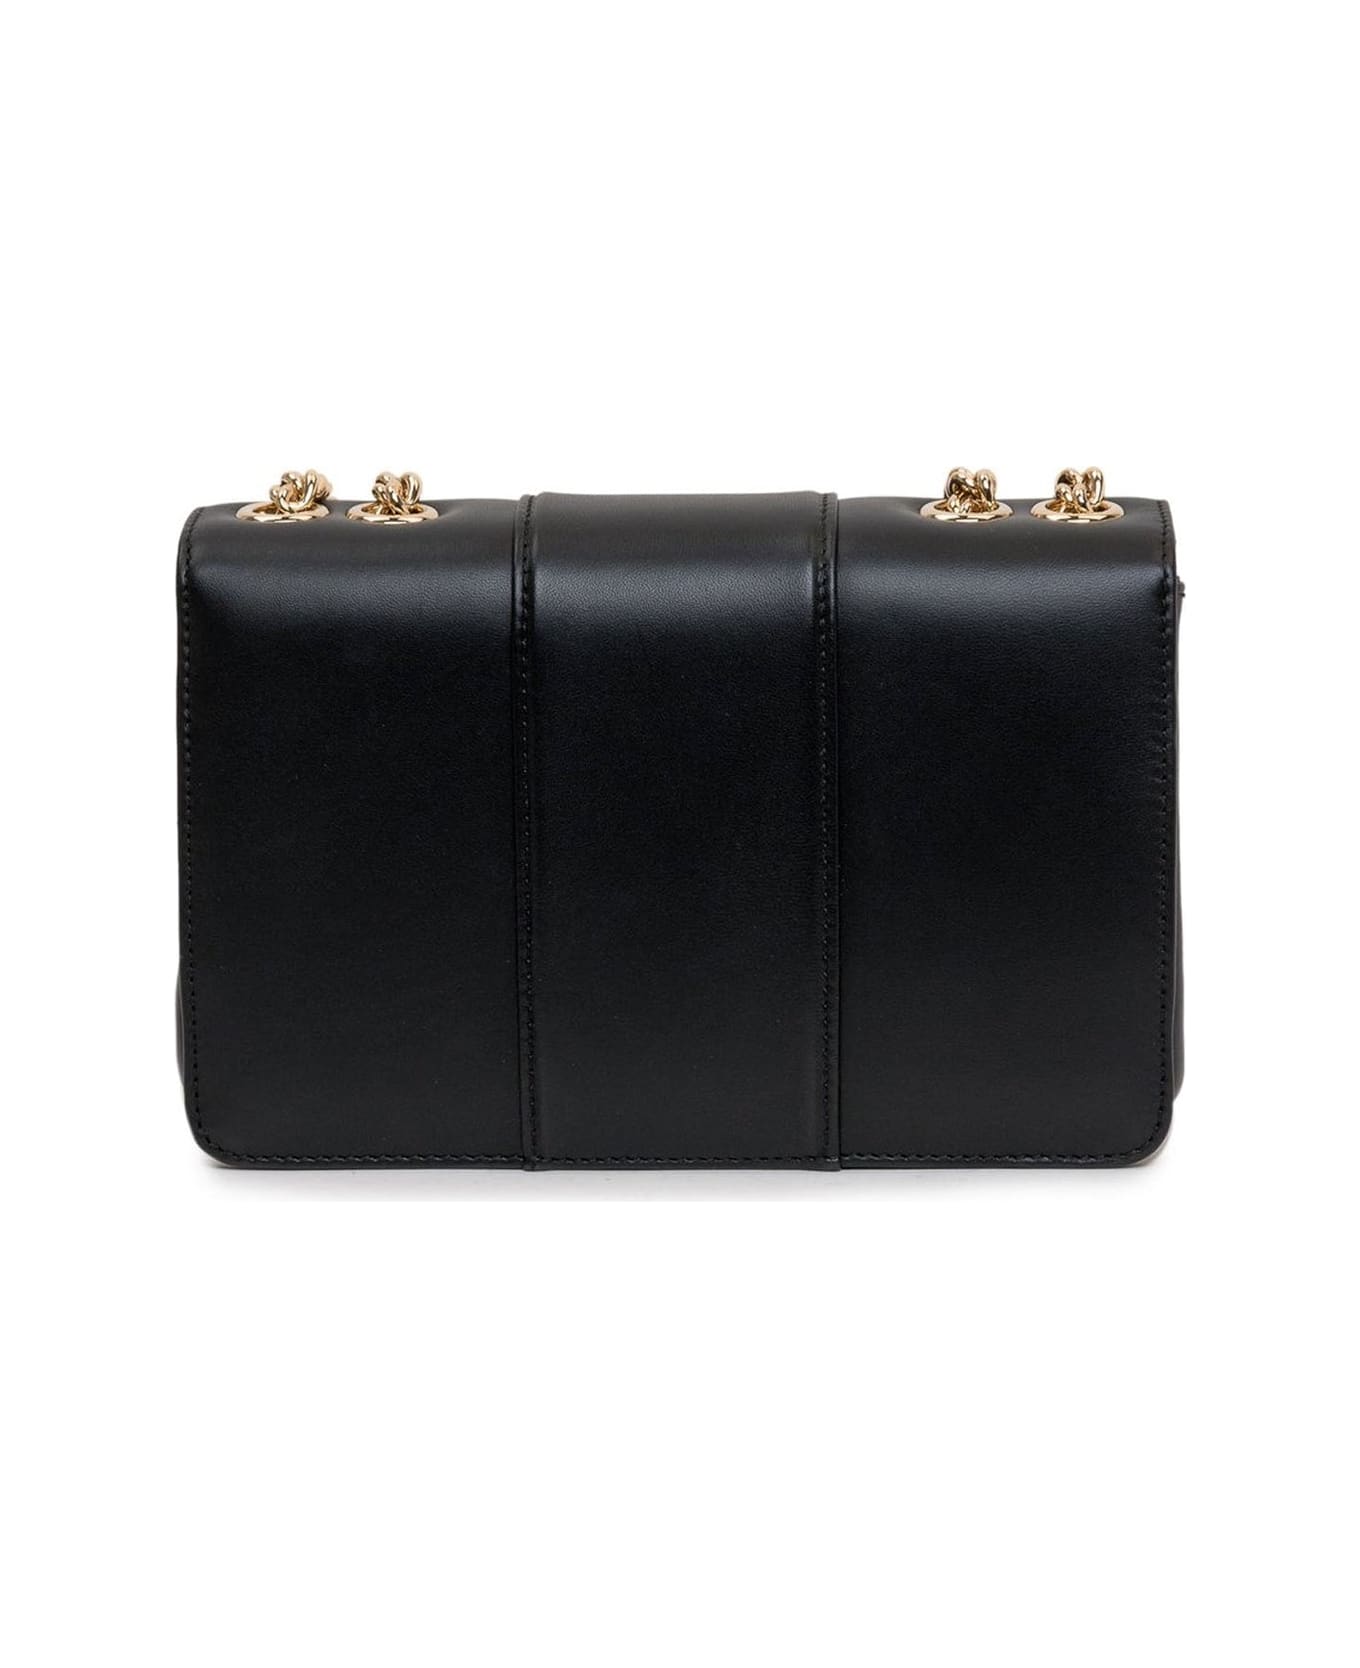 Dolce & Gabbana Leather Shoulder Bag - Black